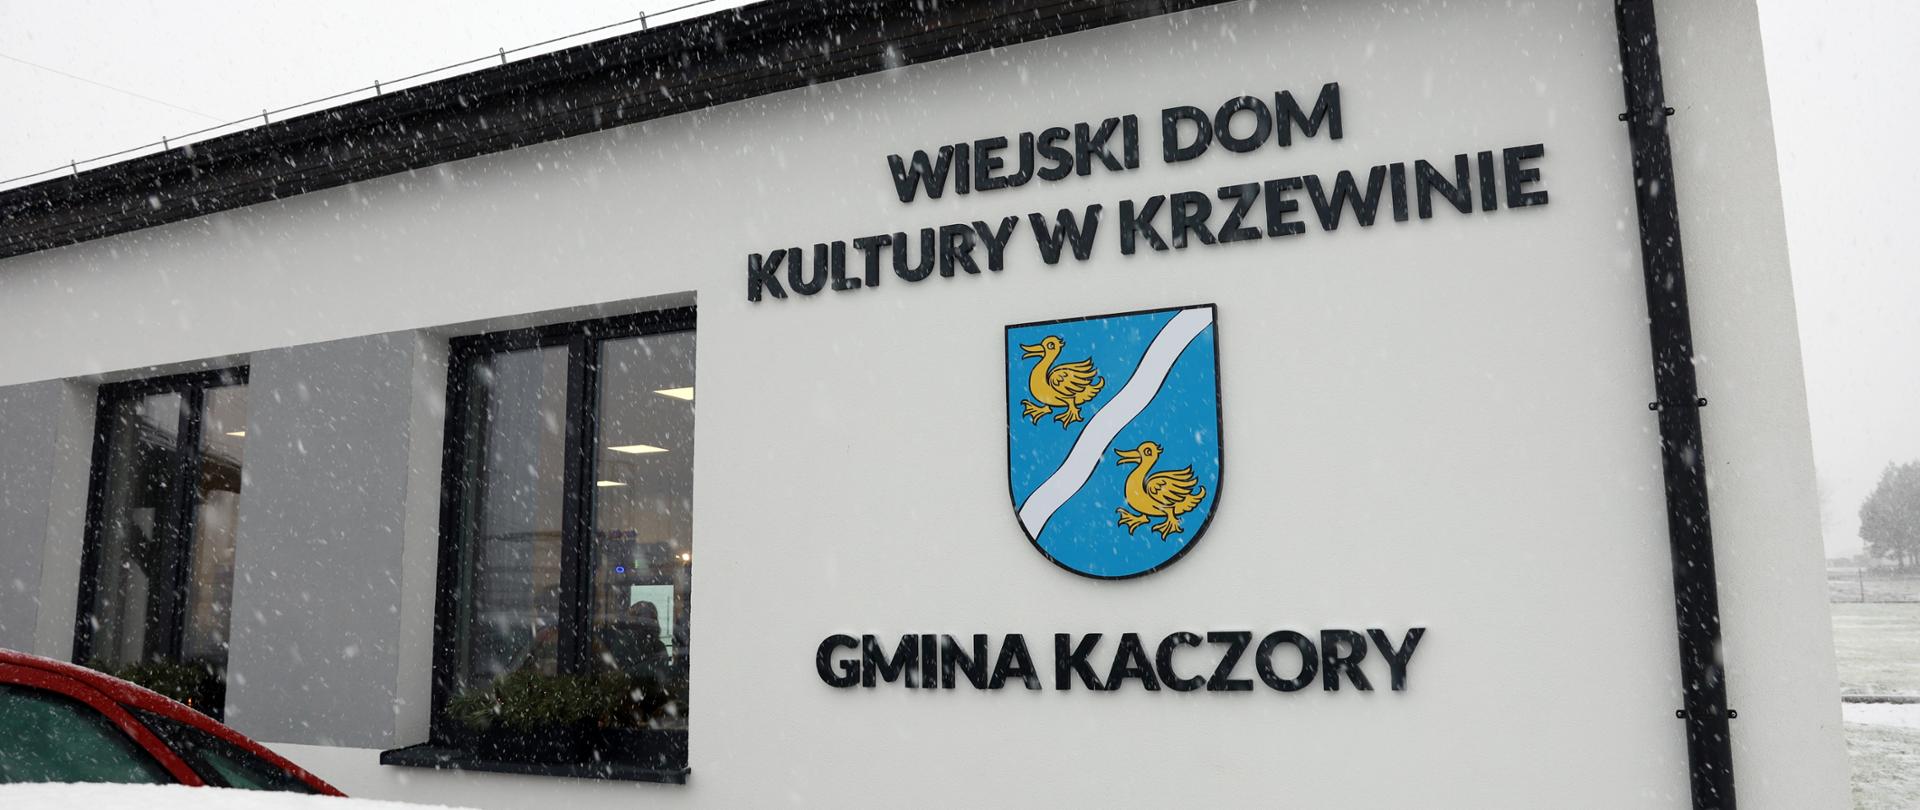 Na zdjęciu widać wiejski dom kultury w Krzewinie wraz z napisem i herbem gminy